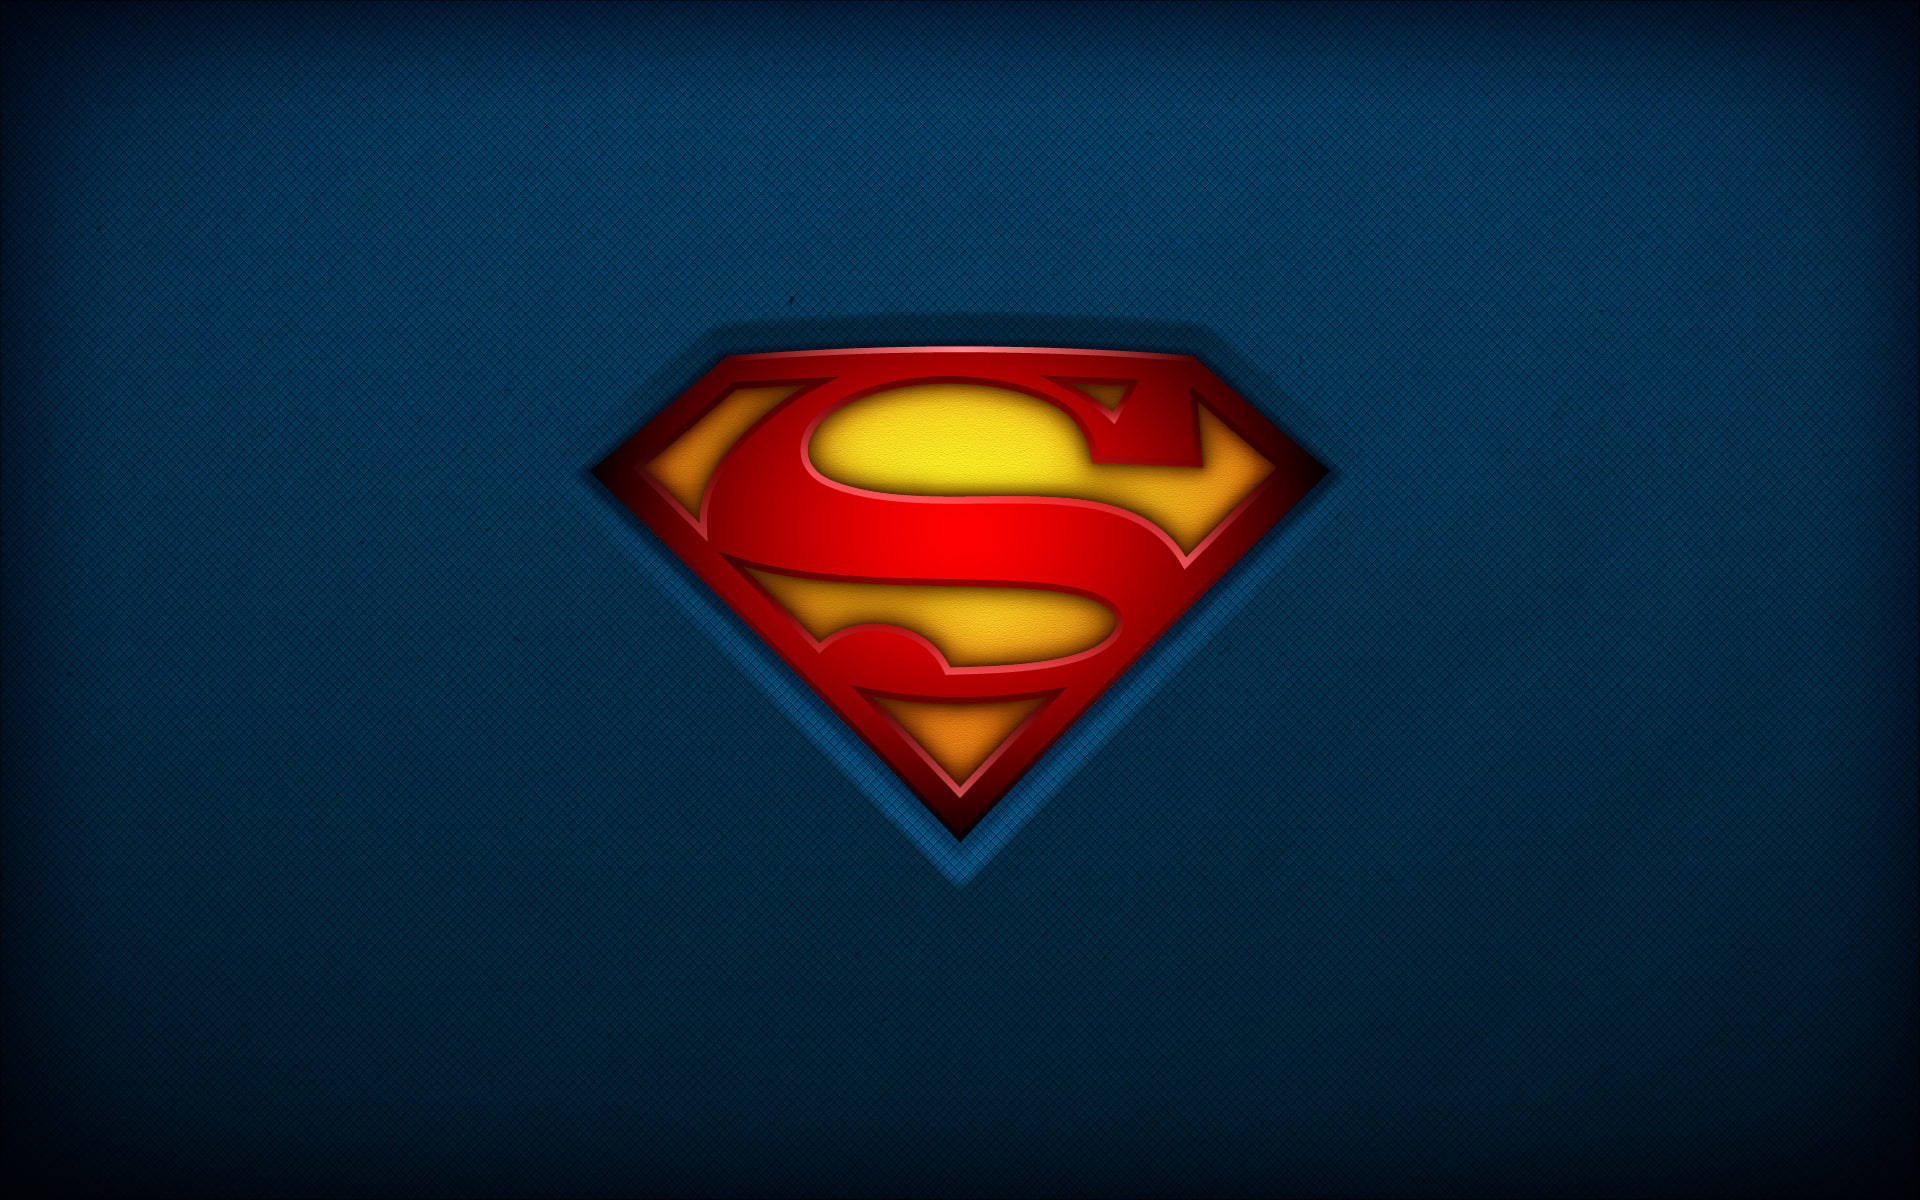 Iconicasagoma Del Logo Di Superman A Colori Vivaci In Alta Risoluzione. Sfondo